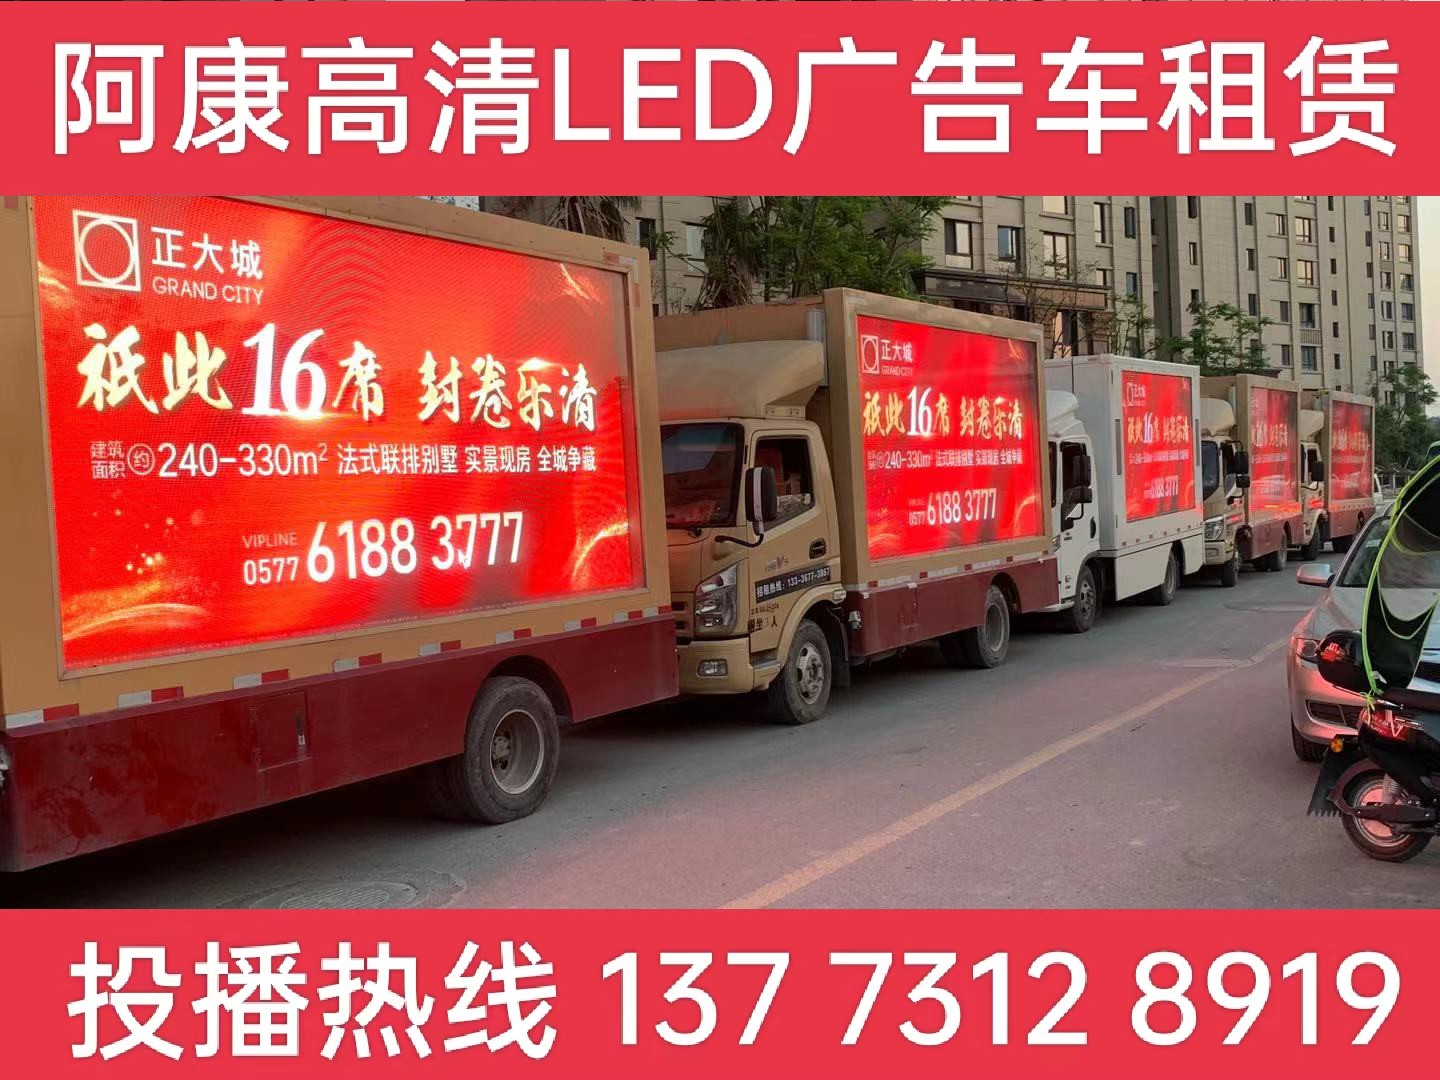 芜湖LED广告车出租